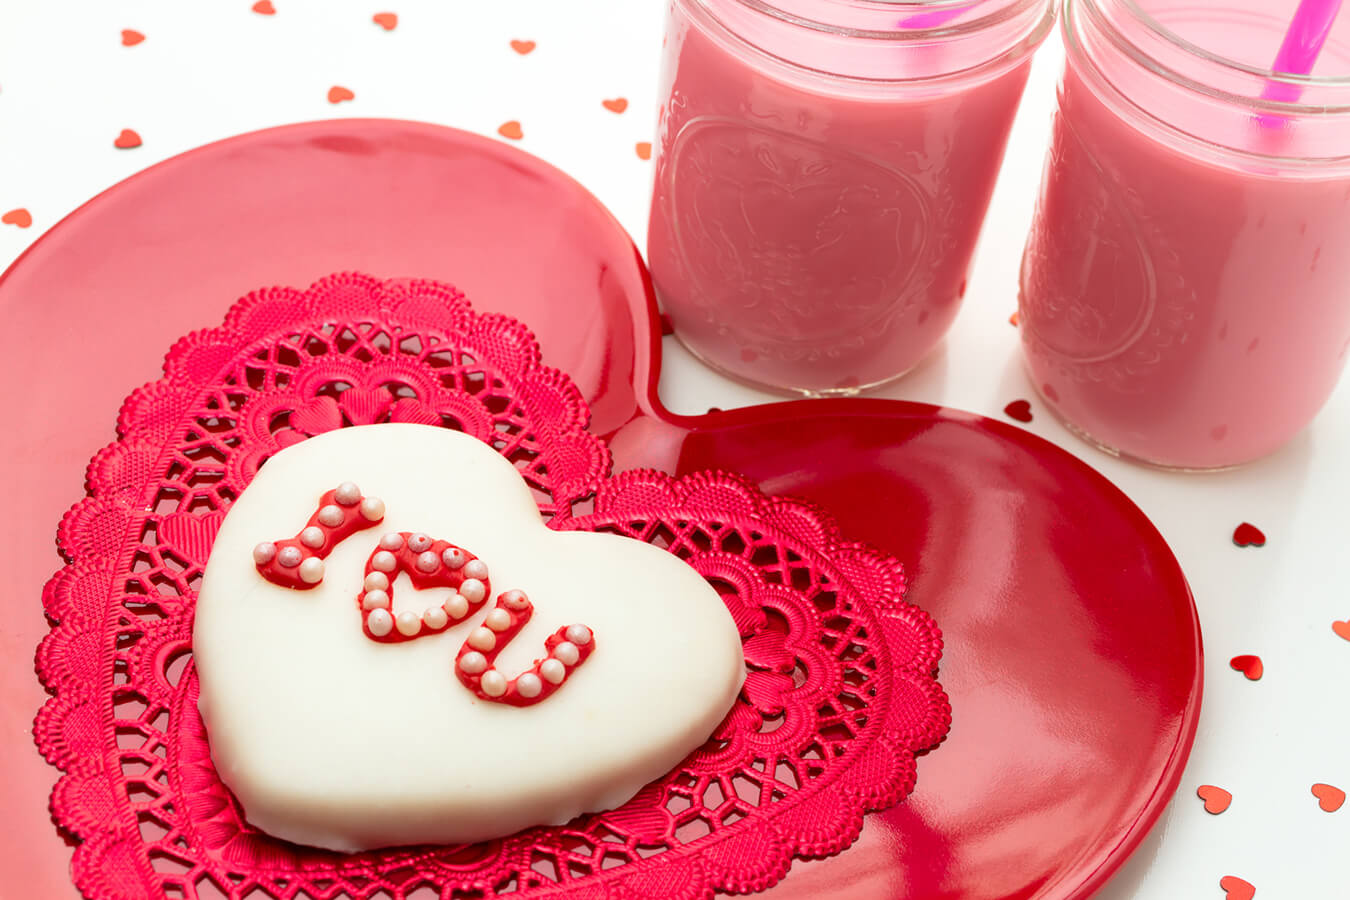 Ricette Chetogeniche per San Valentino: Amore e Salute sulla Tavola